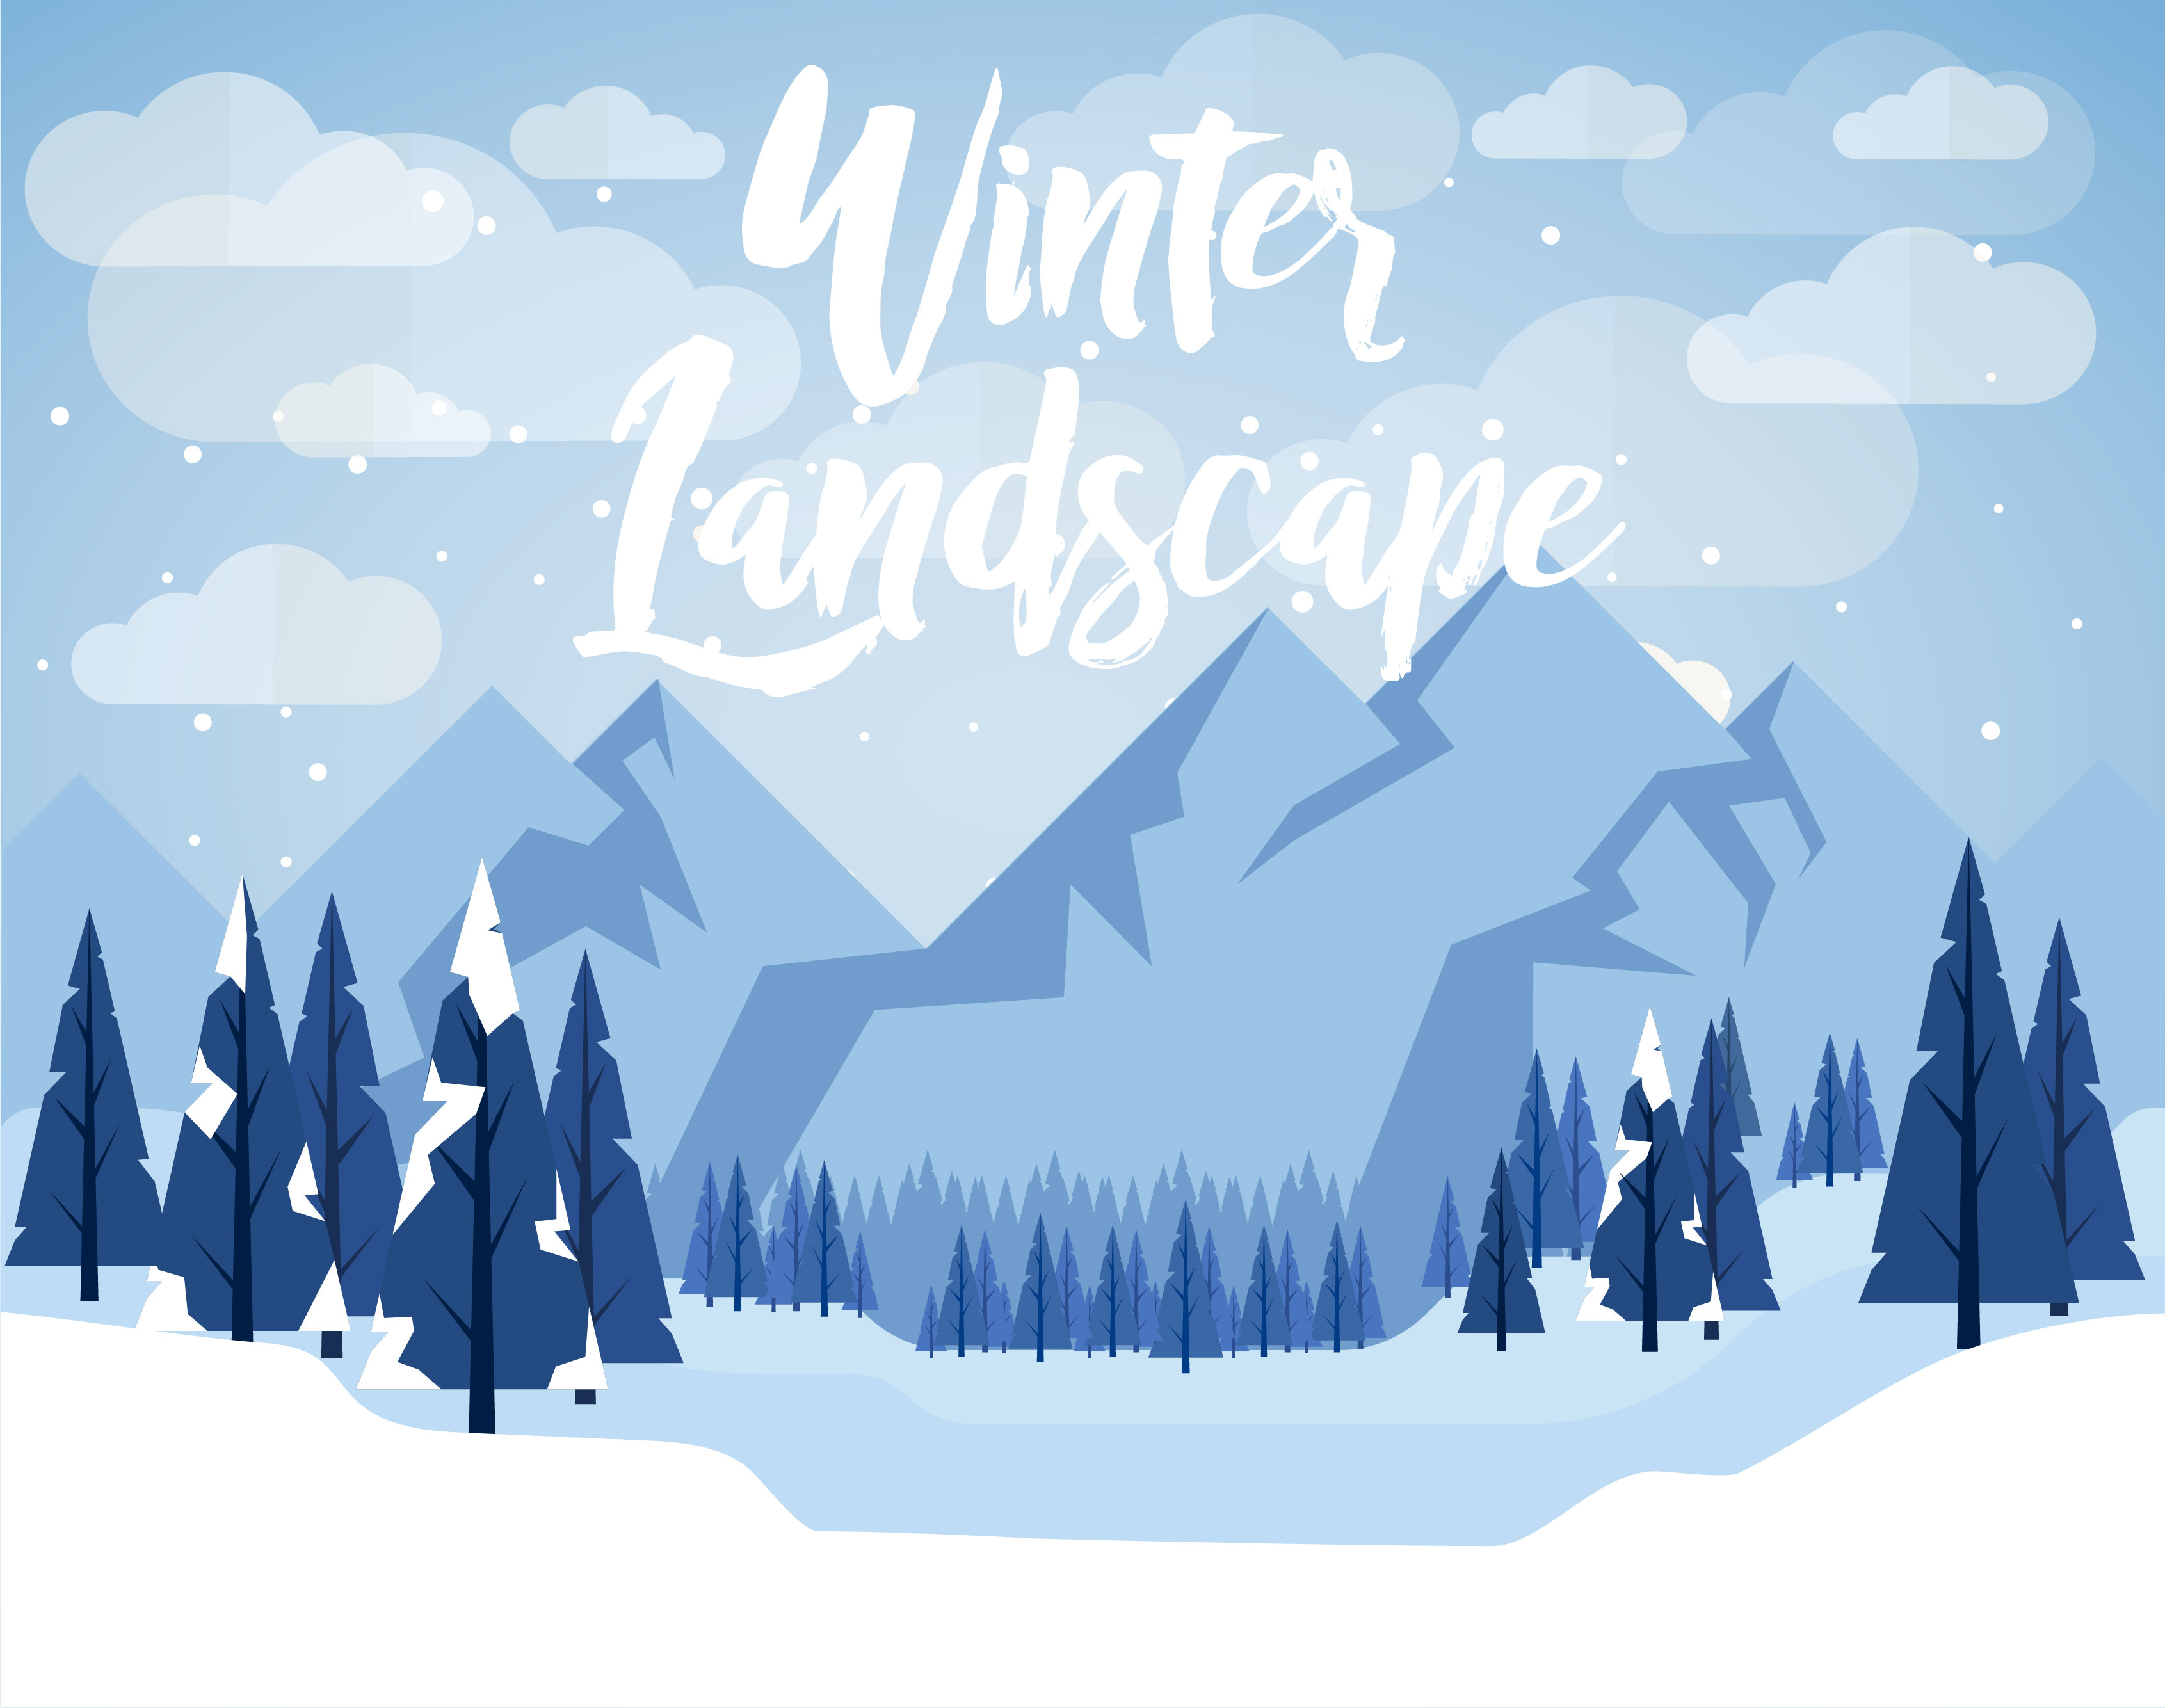 Download Flat Design Vector Winter Landscape - Download Free Vectors, Clipart Graphics & Vector Art